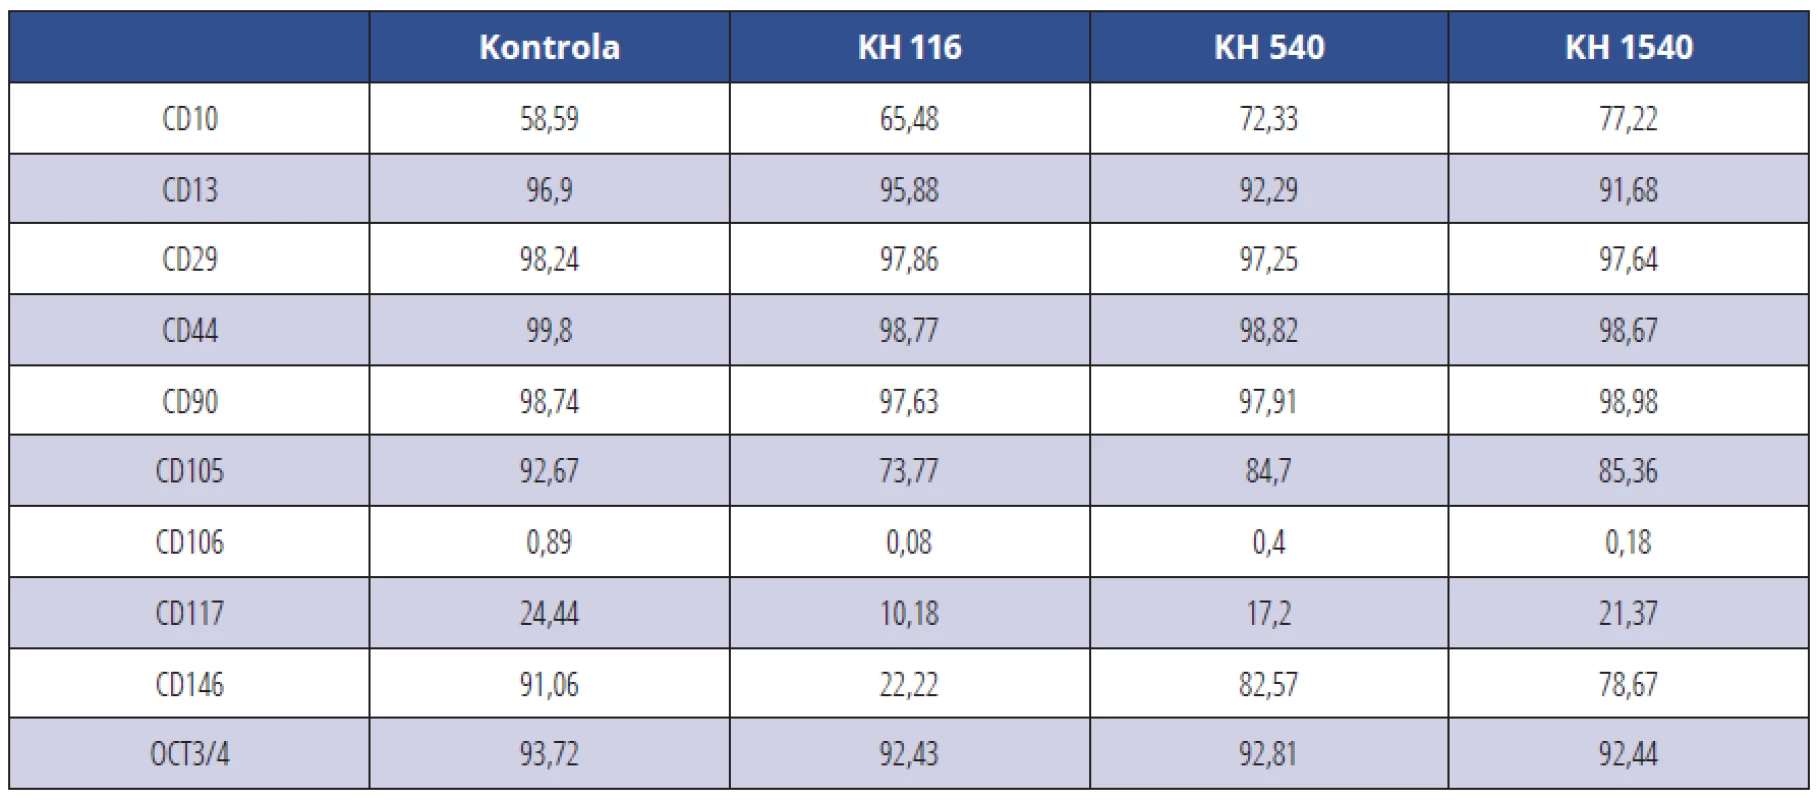 CD pozitivní KBZD v procentech v rámci populace linie 2; KBZD kultivovány v kontrolním médiu
(Kontrola), médiu 1 (KH 116), médiu 2 (KH 540) a médiu 3 (KH 1500)<br>
Tab. 2 Percentage of CD positive DPSCs within the population of the DPSC line 2; DPSCs were cultivated in control medium (Control), medium 1 (HA 116), medium 2 (HA 540) and medium 3 (HA 1500)